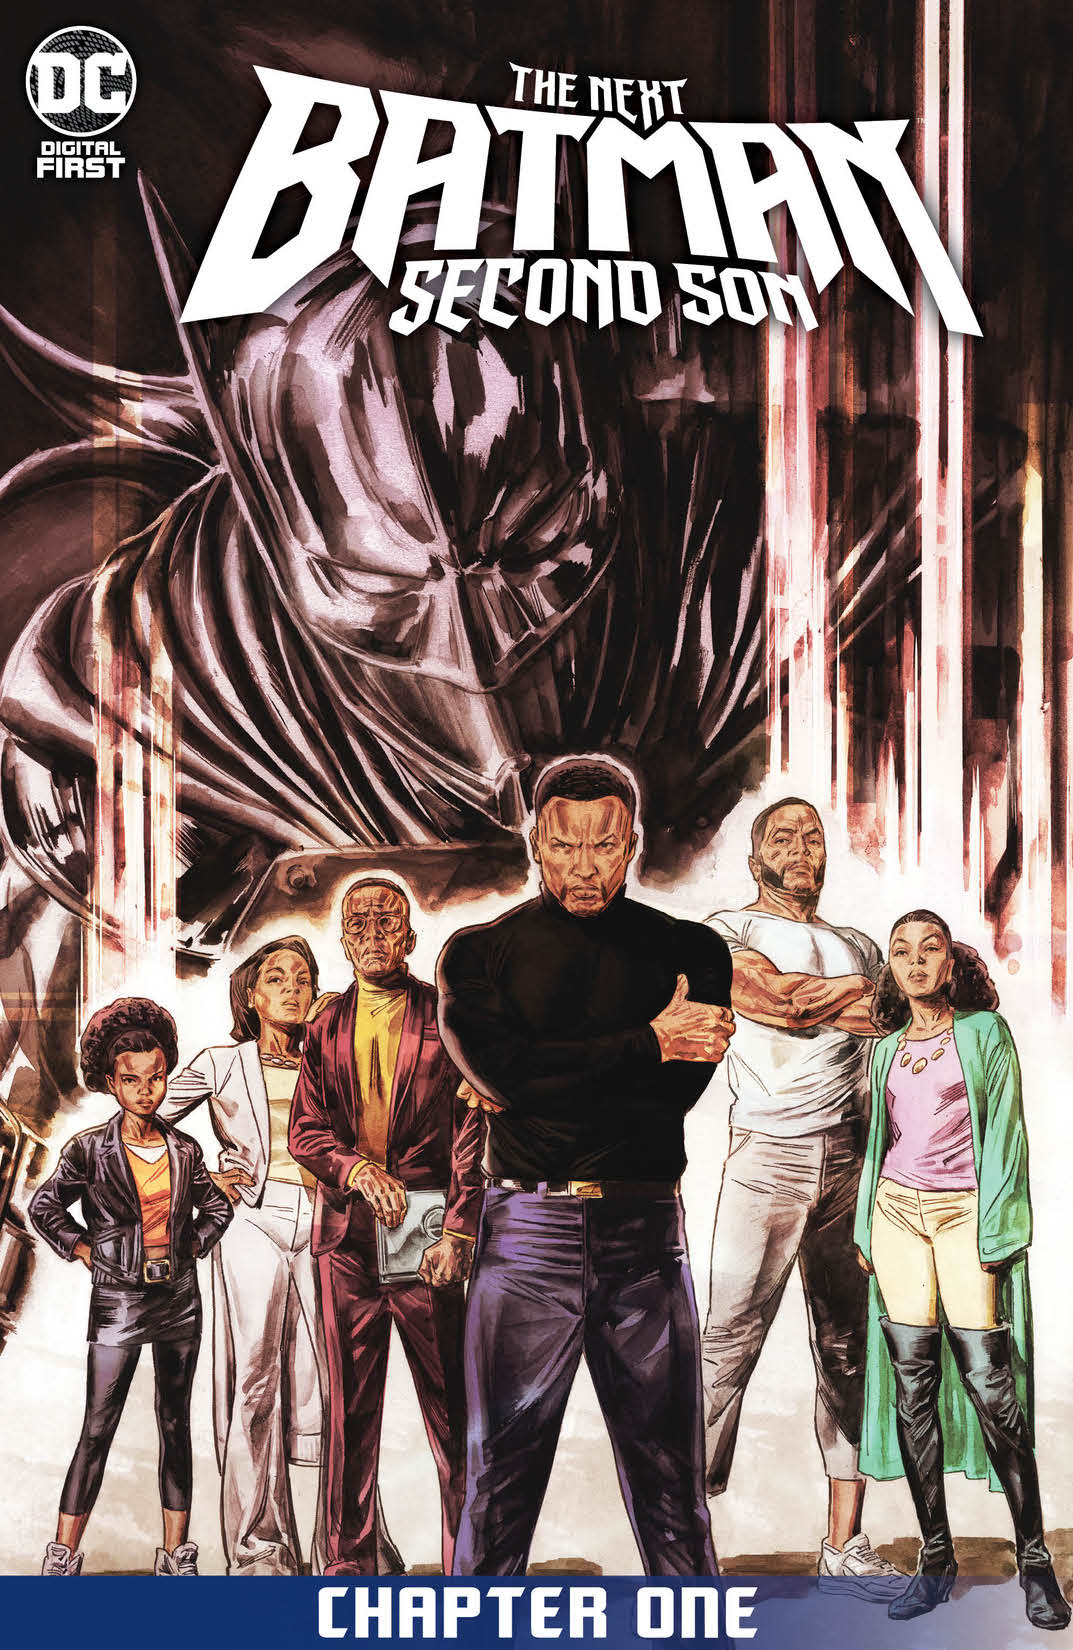 The Next Batman: Second Son #1 preview images